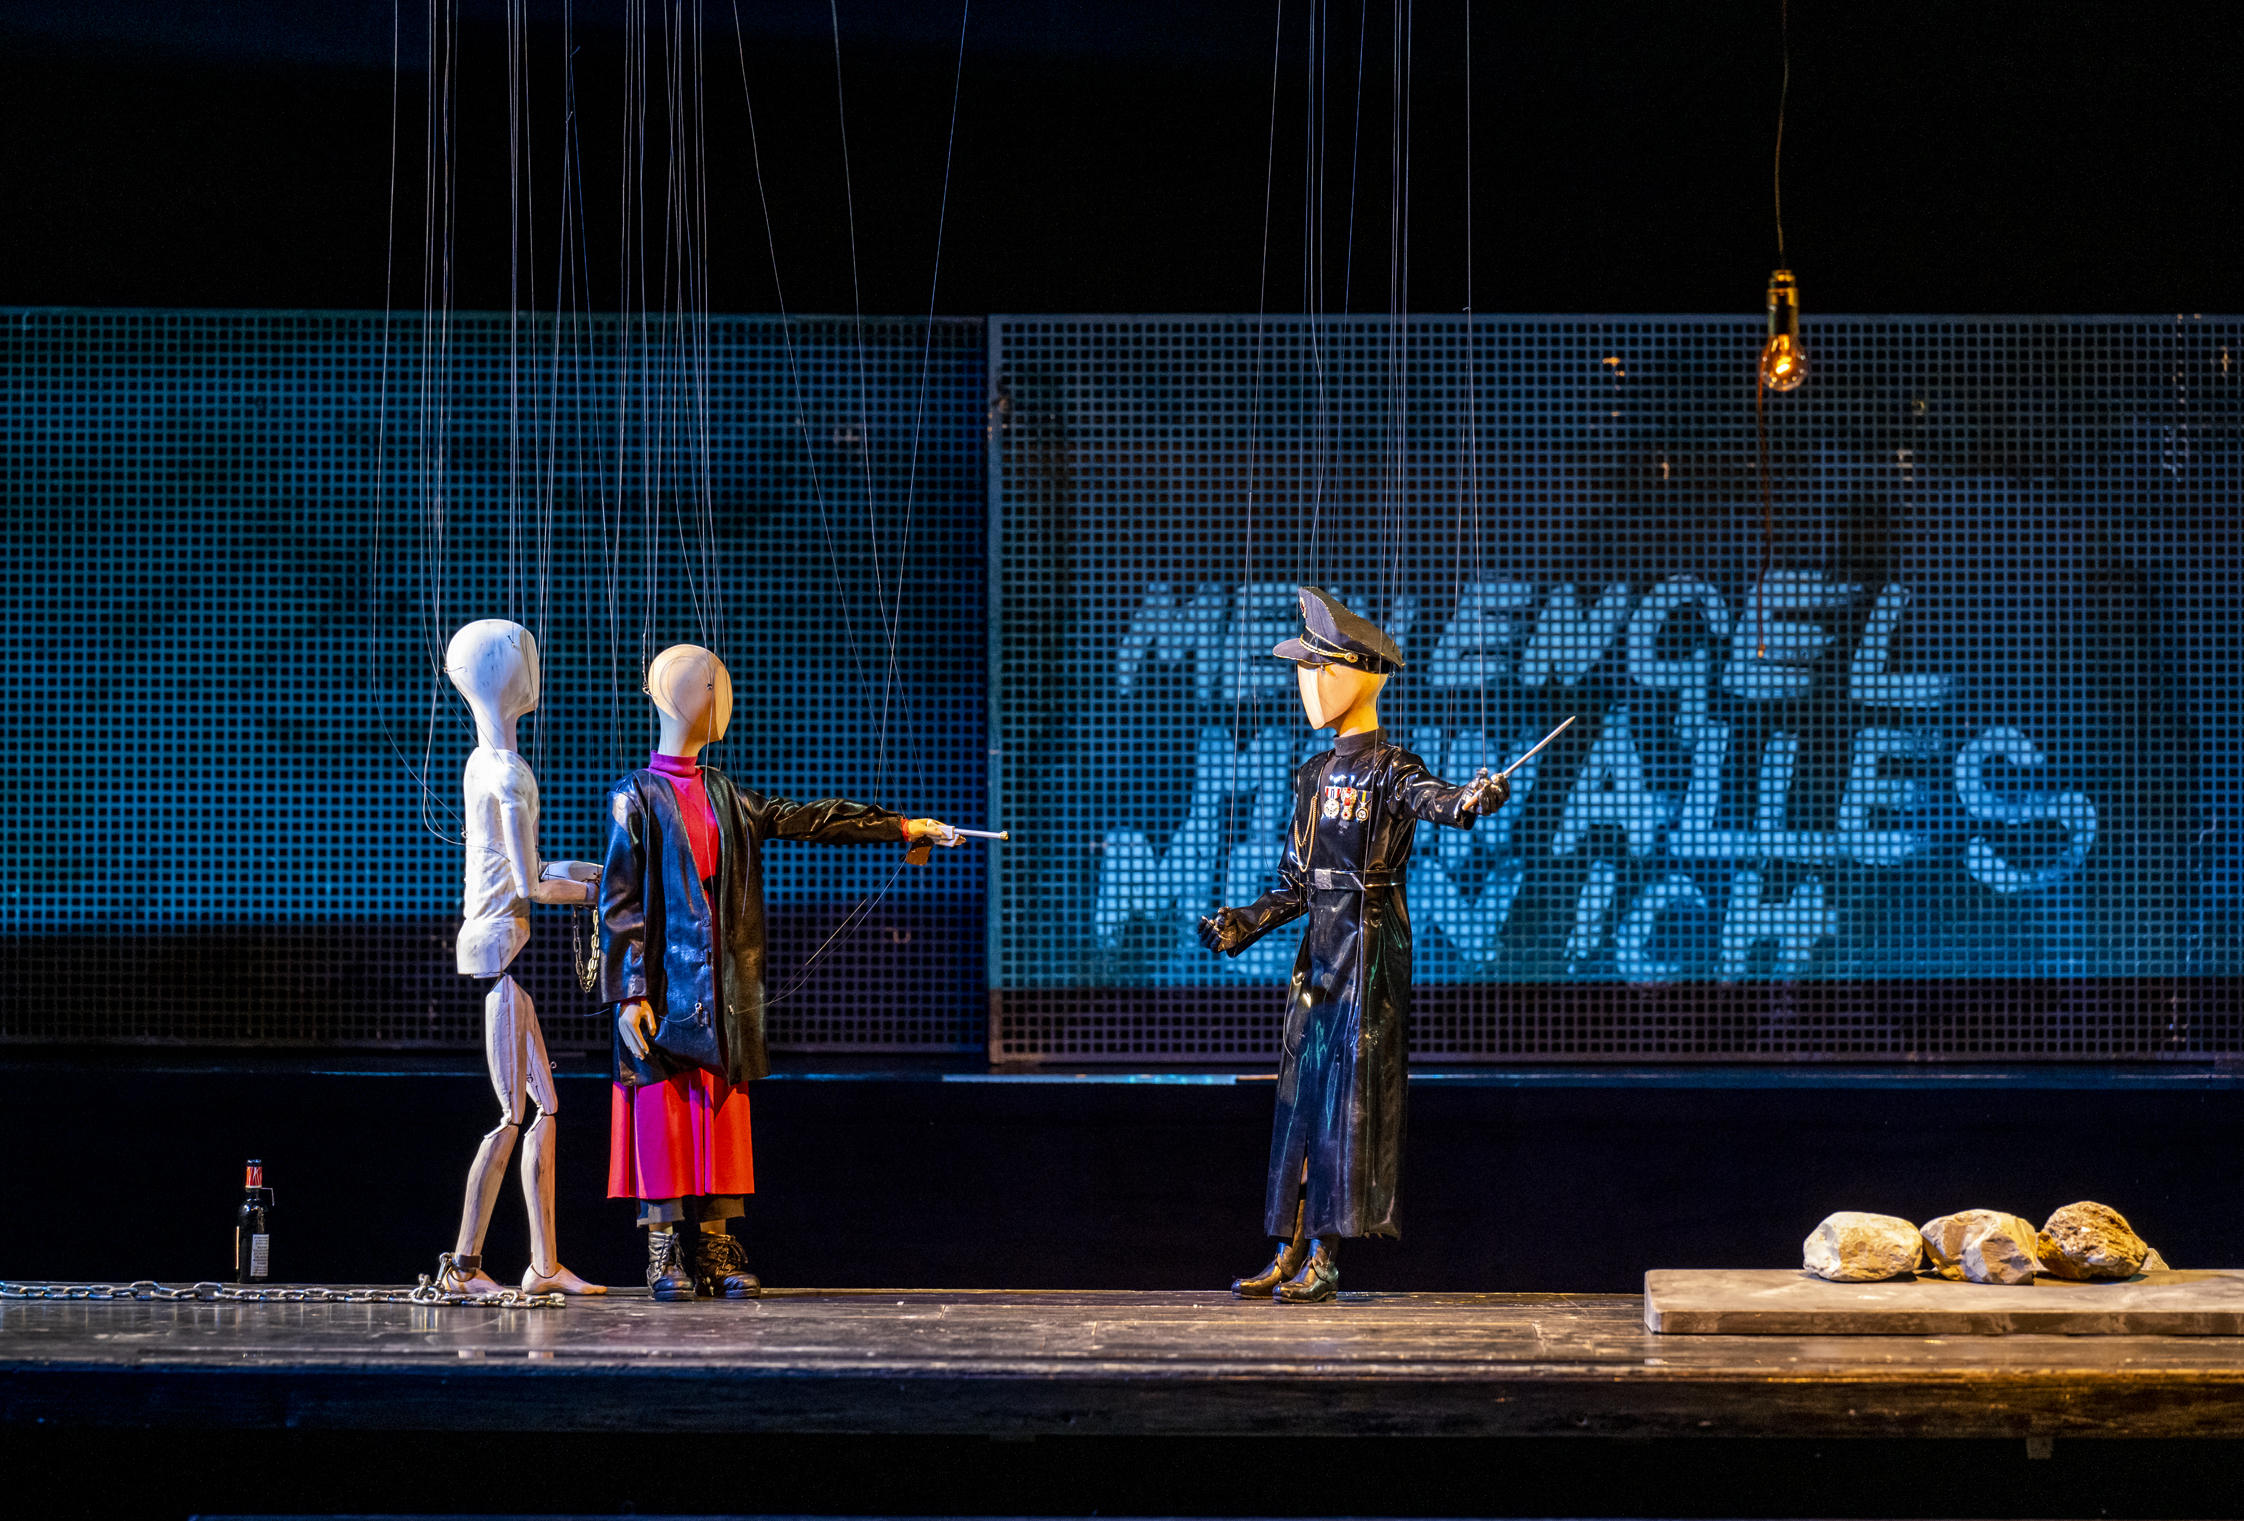 FIDELIO Marionettentheater Salzburg fokus visuelle kommunikation DSC0351